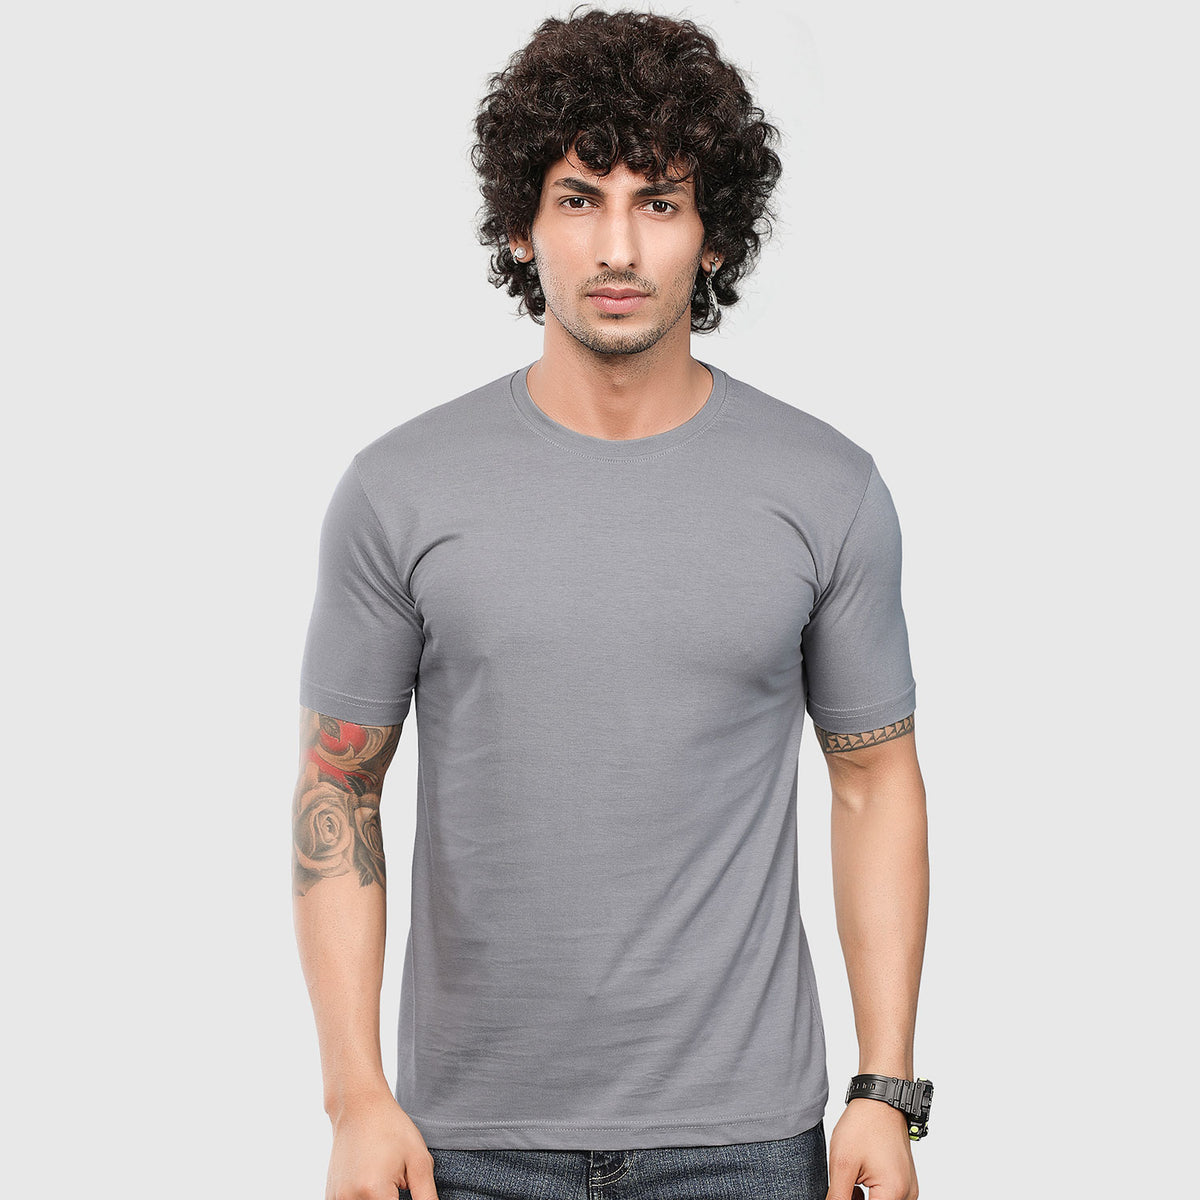 Grey Plain T-shirt